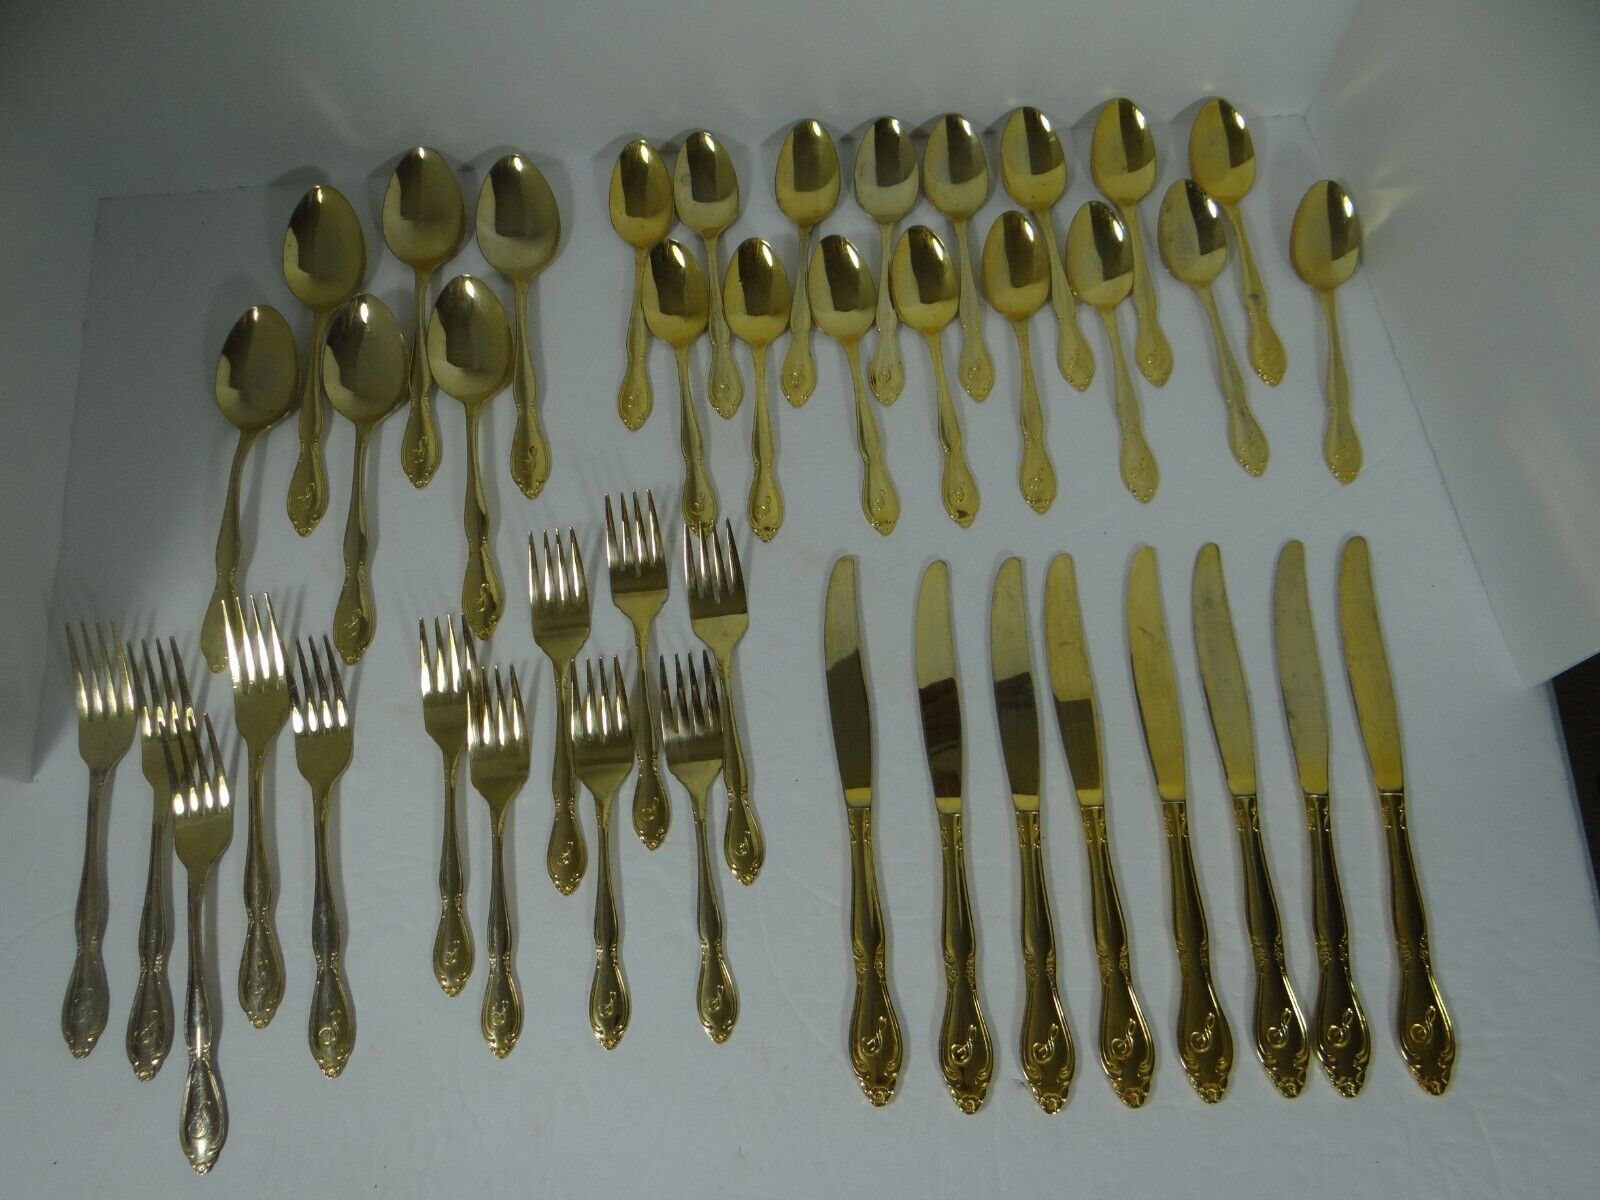 Goldtone Flatware 42 Pieces Korea Monogrammed Knives Spoons Forks